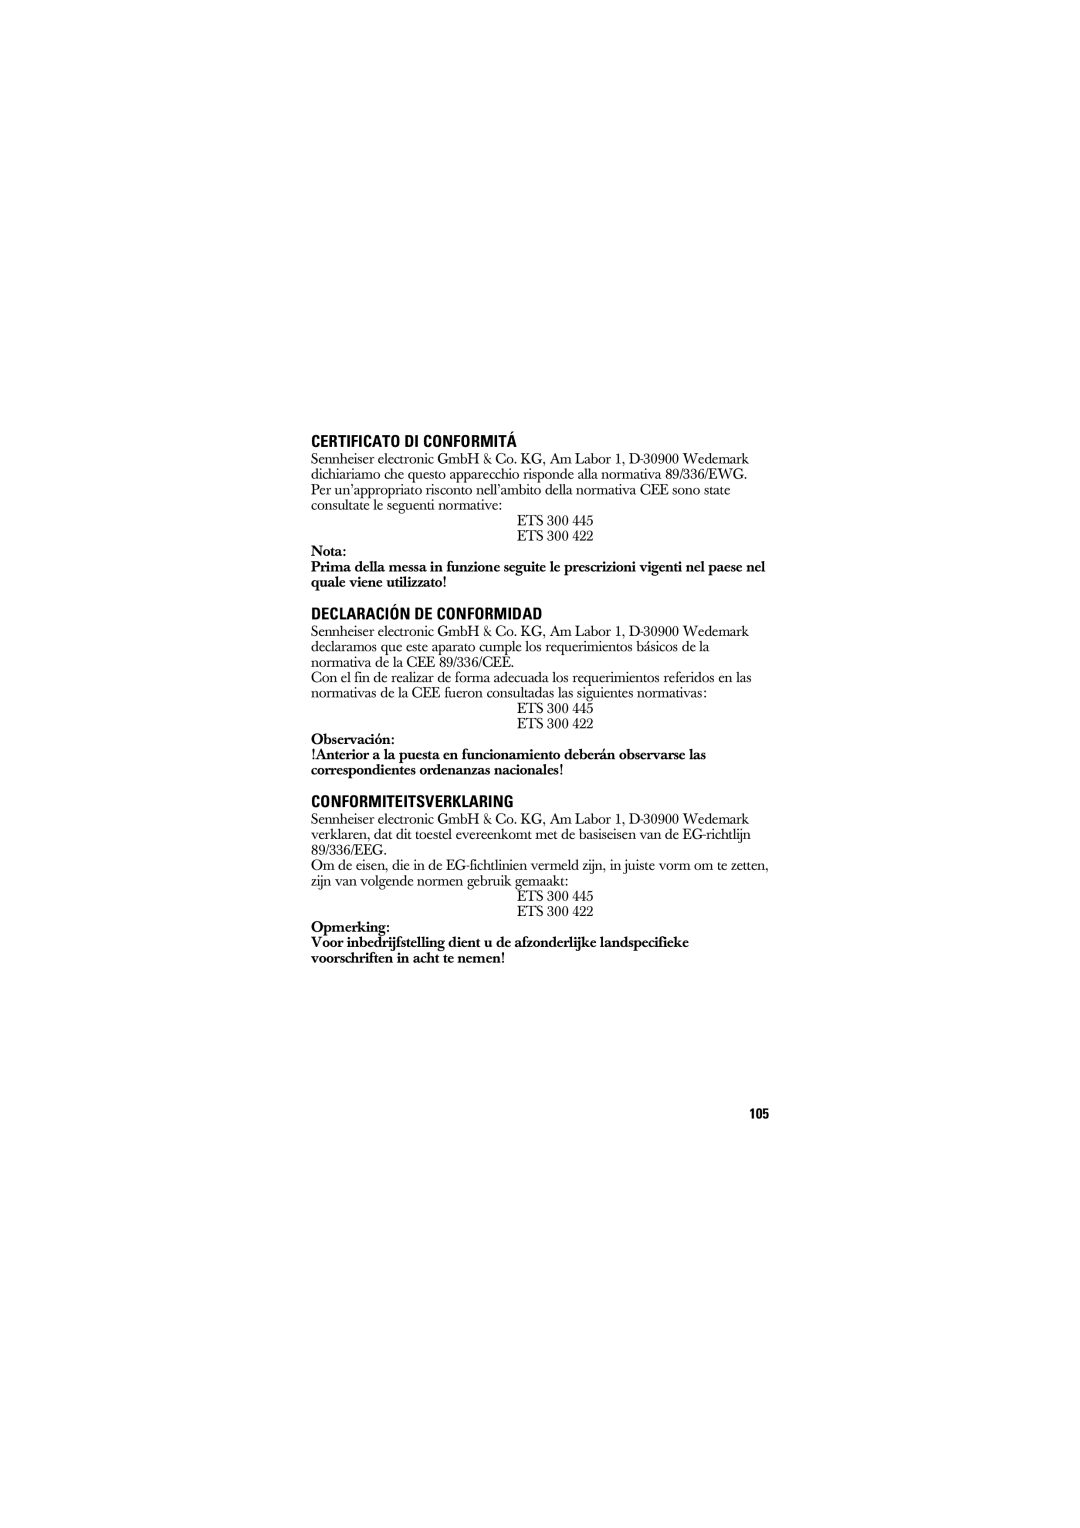 Sennheiser SK 50_250, SK 250 manual Certificato Di Conformitá, Declaración De Conformidad, Conformiteitsverklaring 